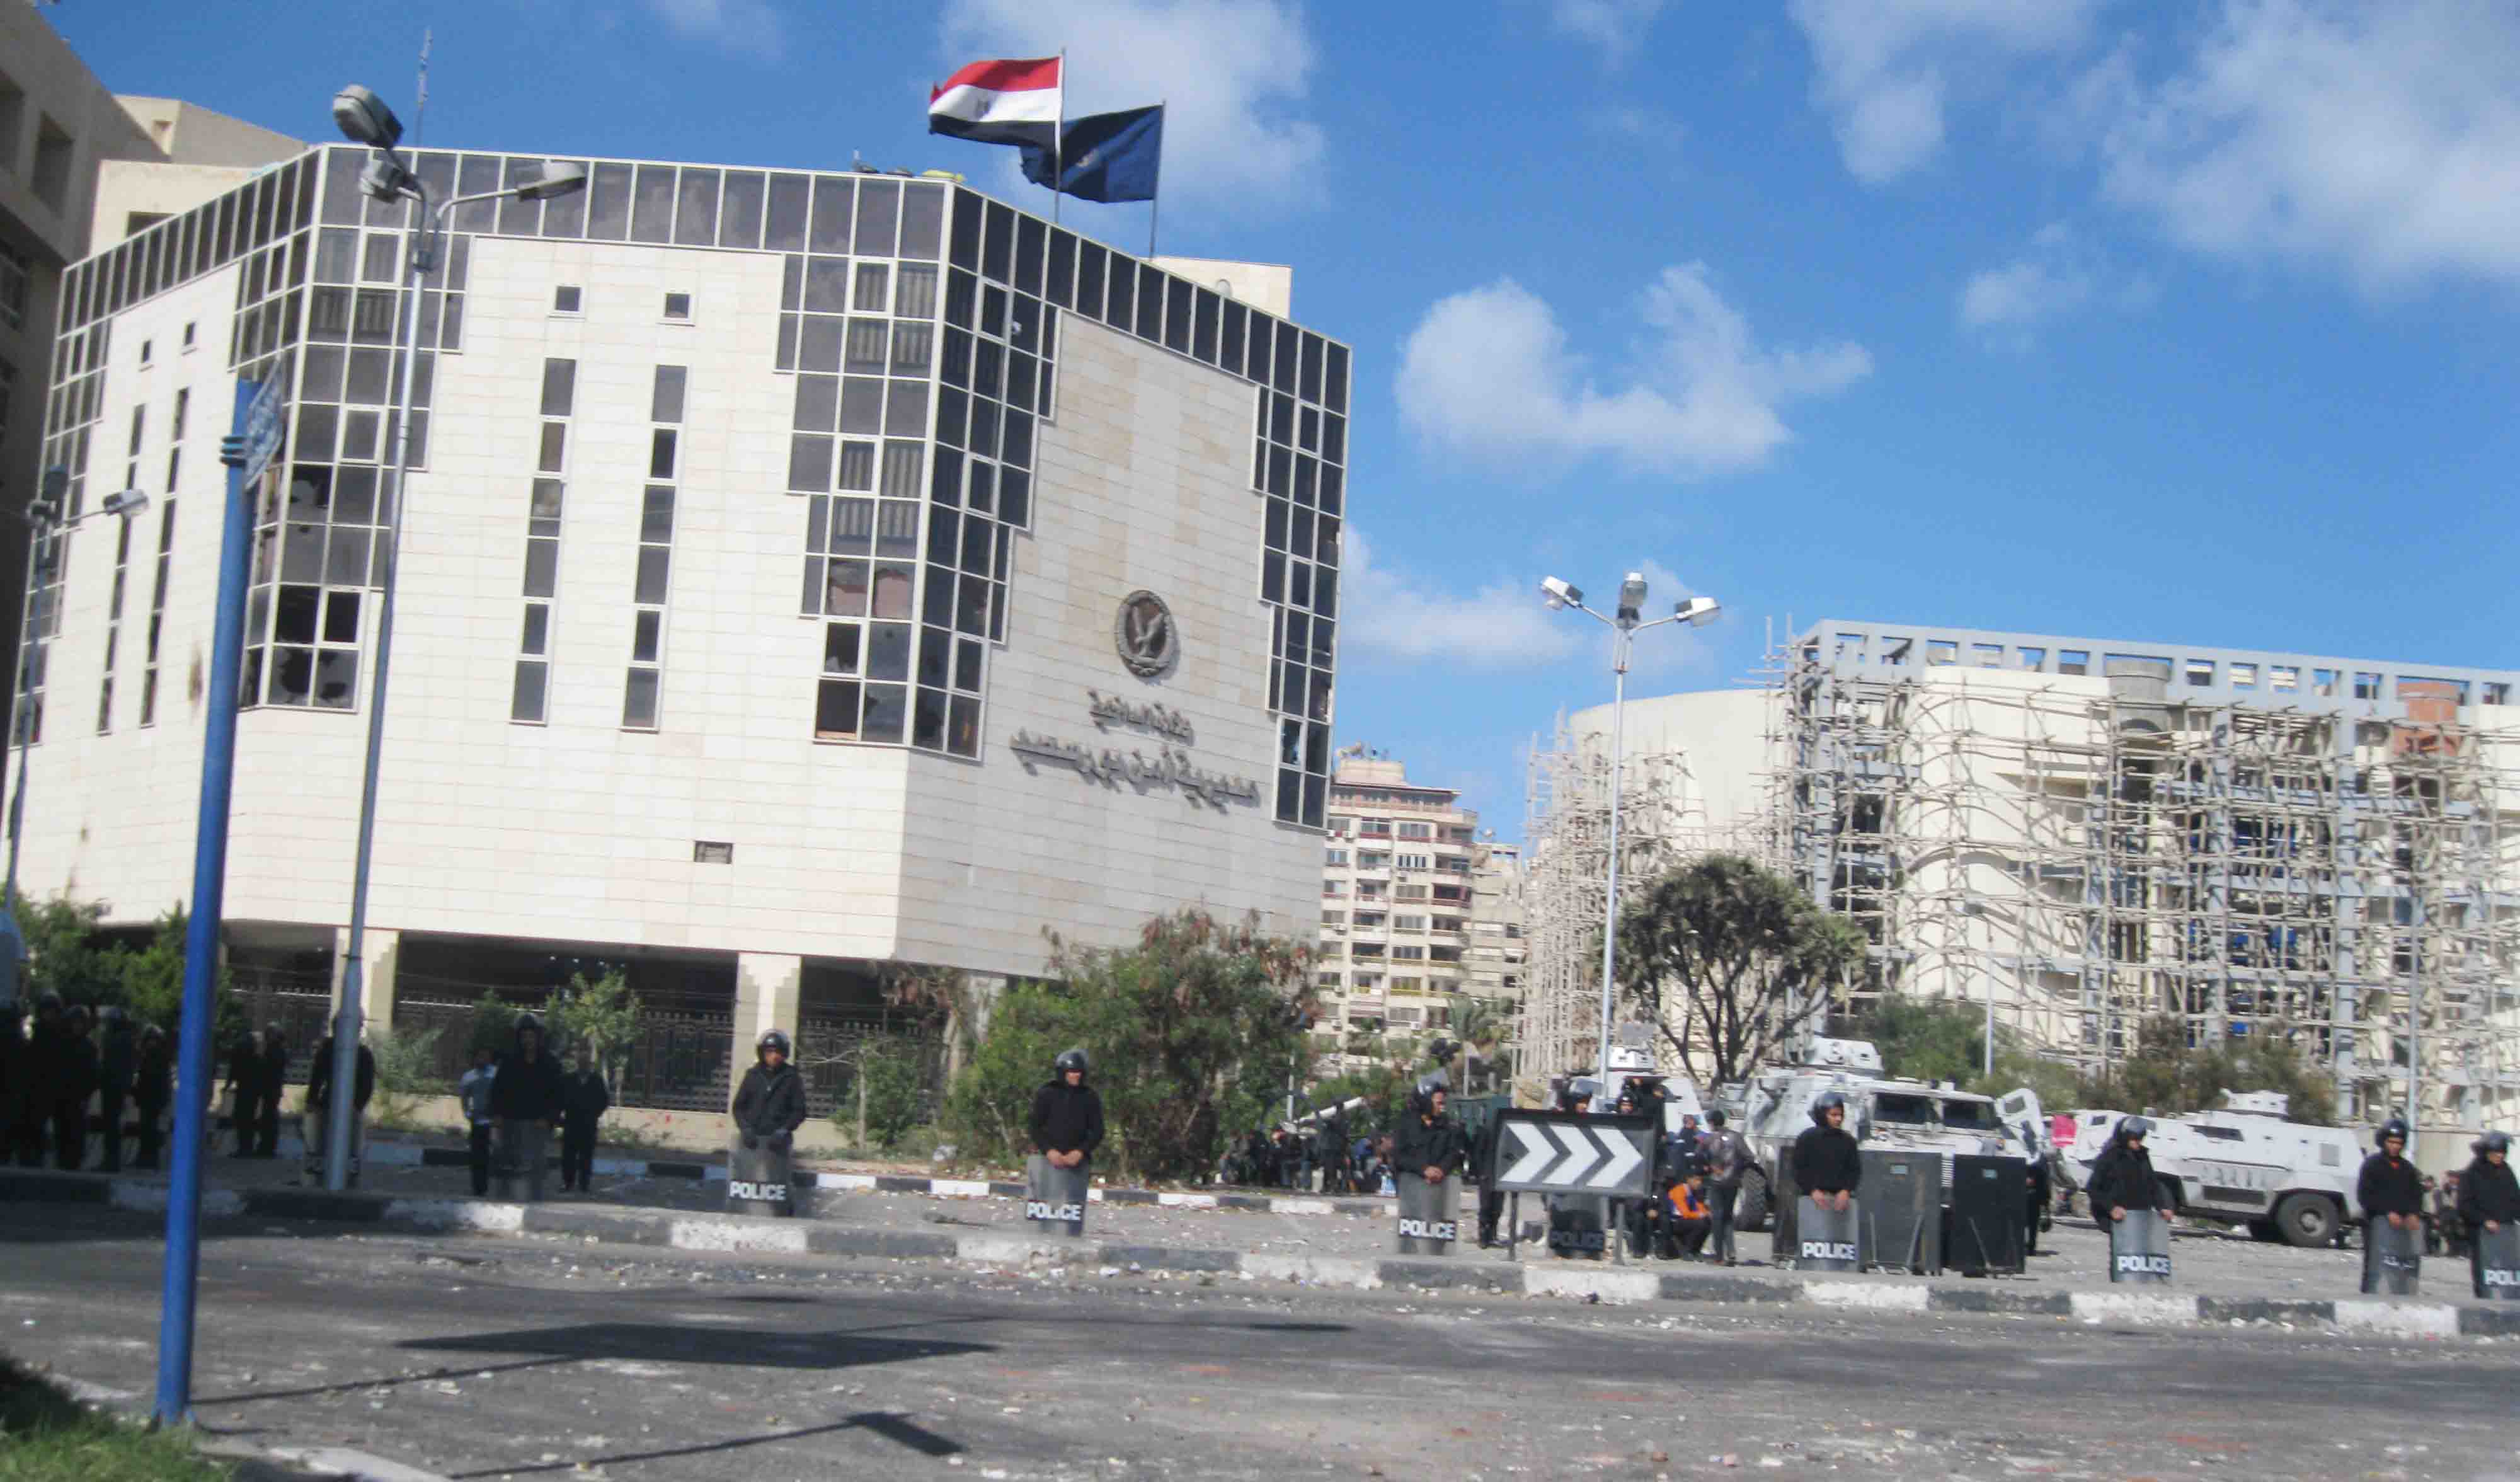 وزارة الداخلية تعلن رسميا تسليمها مديرية أمن بورسعيد للقوات المسلحة لتأمينها